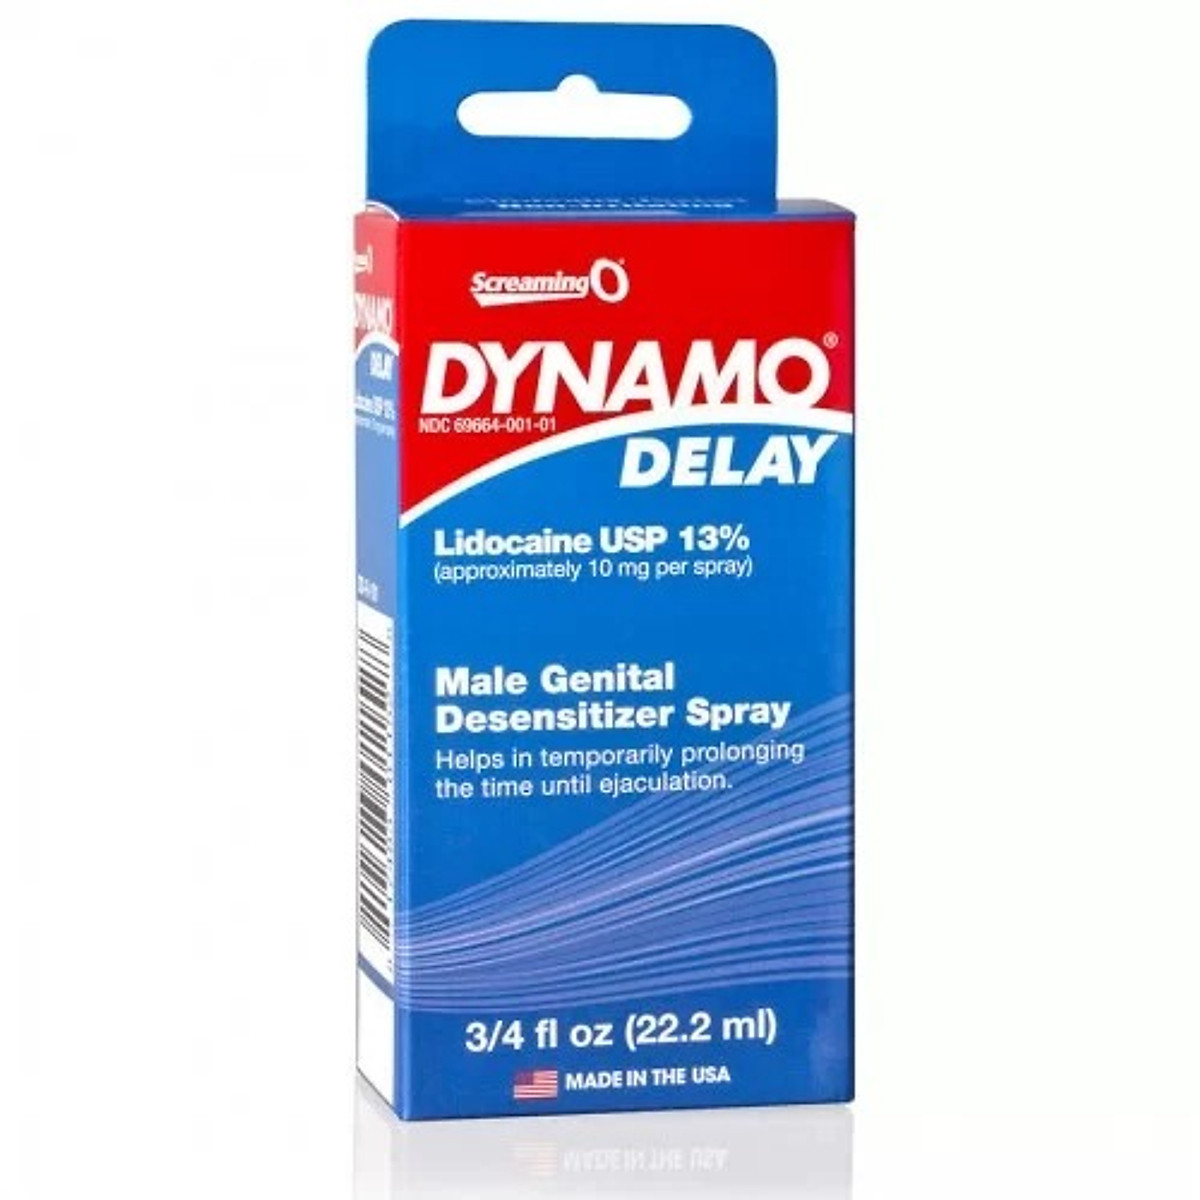 Chai Xịt Dynamo Delay Spray 22.2ml Kéo Dài Thời Gian Quan Hệ Cho Nam Giới - Kèm BCS Powermen (H3c)